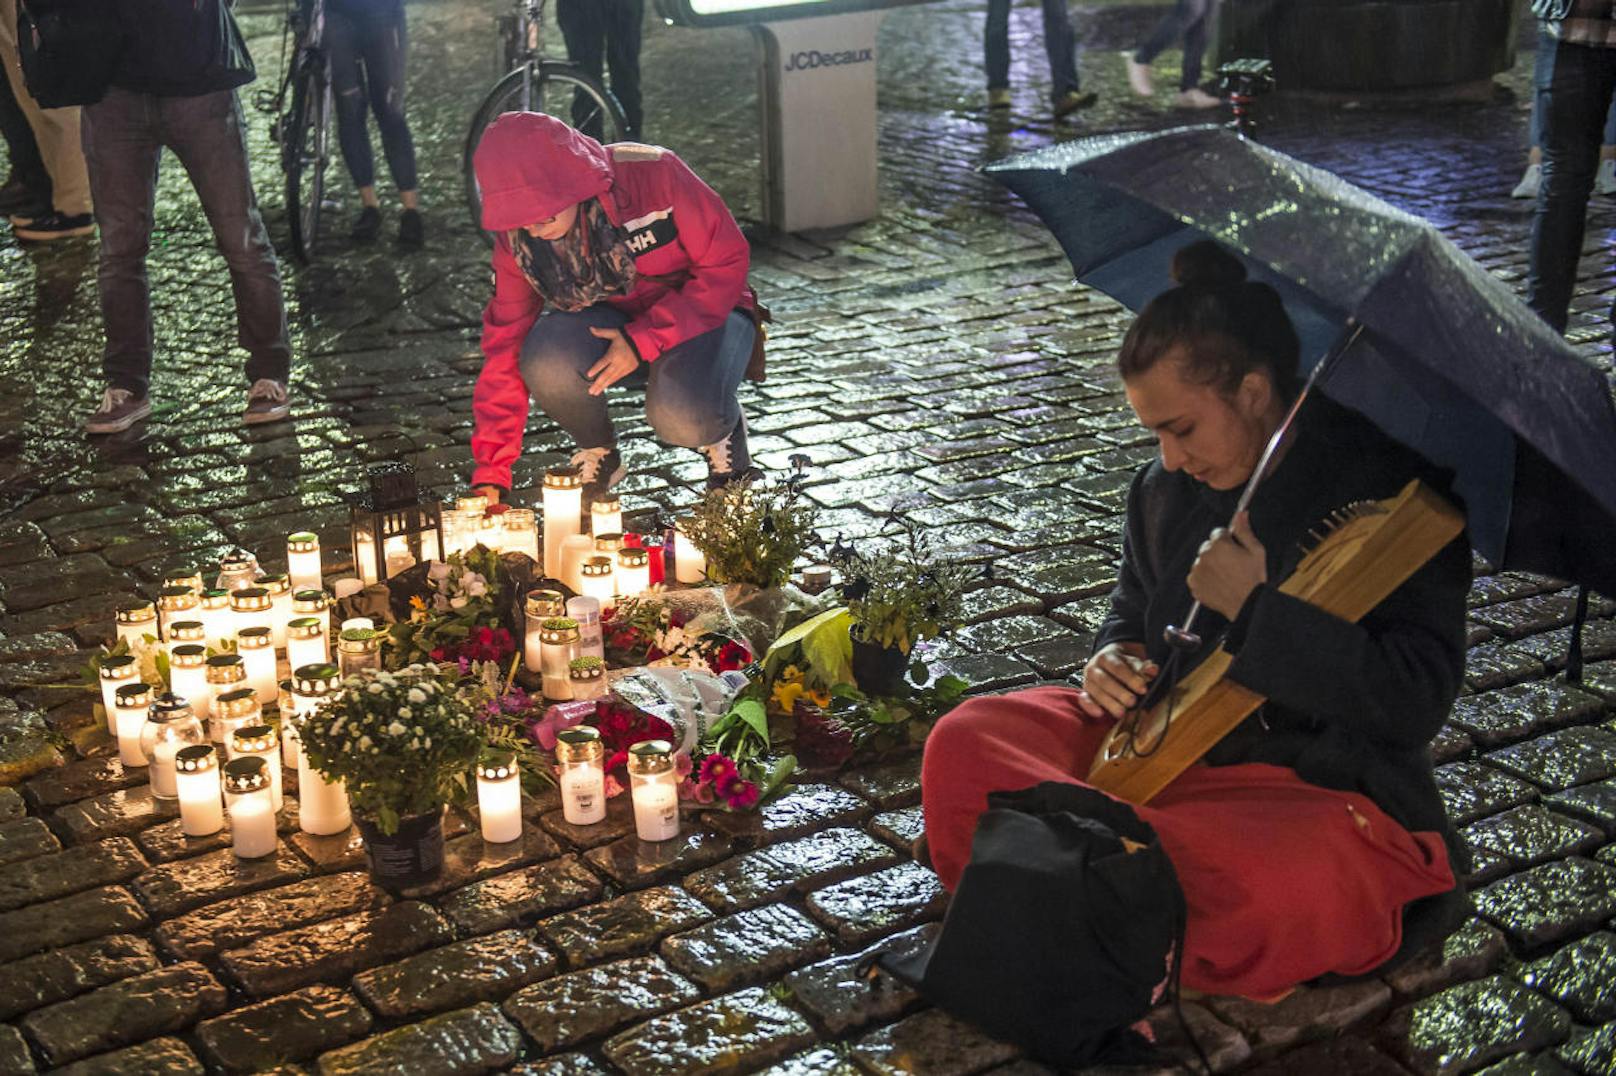 <b>18. August 2017:</b> Nur einen Tag nach dem Terroranschlag in Barcelona ging in der Innenstadt von <b>Turku</b> ging ein 18-Jähriger plötzlich mit einem <b>Messer </b>aus Passanten los und tötete zwei Menschen und verletzte zehn weitere. Laut Polizeiangaben war der gebürtige Marokkaner bereits Anfang 2016 nach Finnland gekommen, sein Asylantrag sei jedoch abgewiesen worden. Zuvor soll sich der Jugendliche illegal in Deutschland aufgehalten haben. 

<b>Mehr dazu: </b> <a href="https://www.heute.at/welt/news/story/Turku-Angreifer-gesteht--bestreitet-Terror-Motiv-50917849">Turku-Angreifer gesteht, bestreitet Terror-Motiv</a>